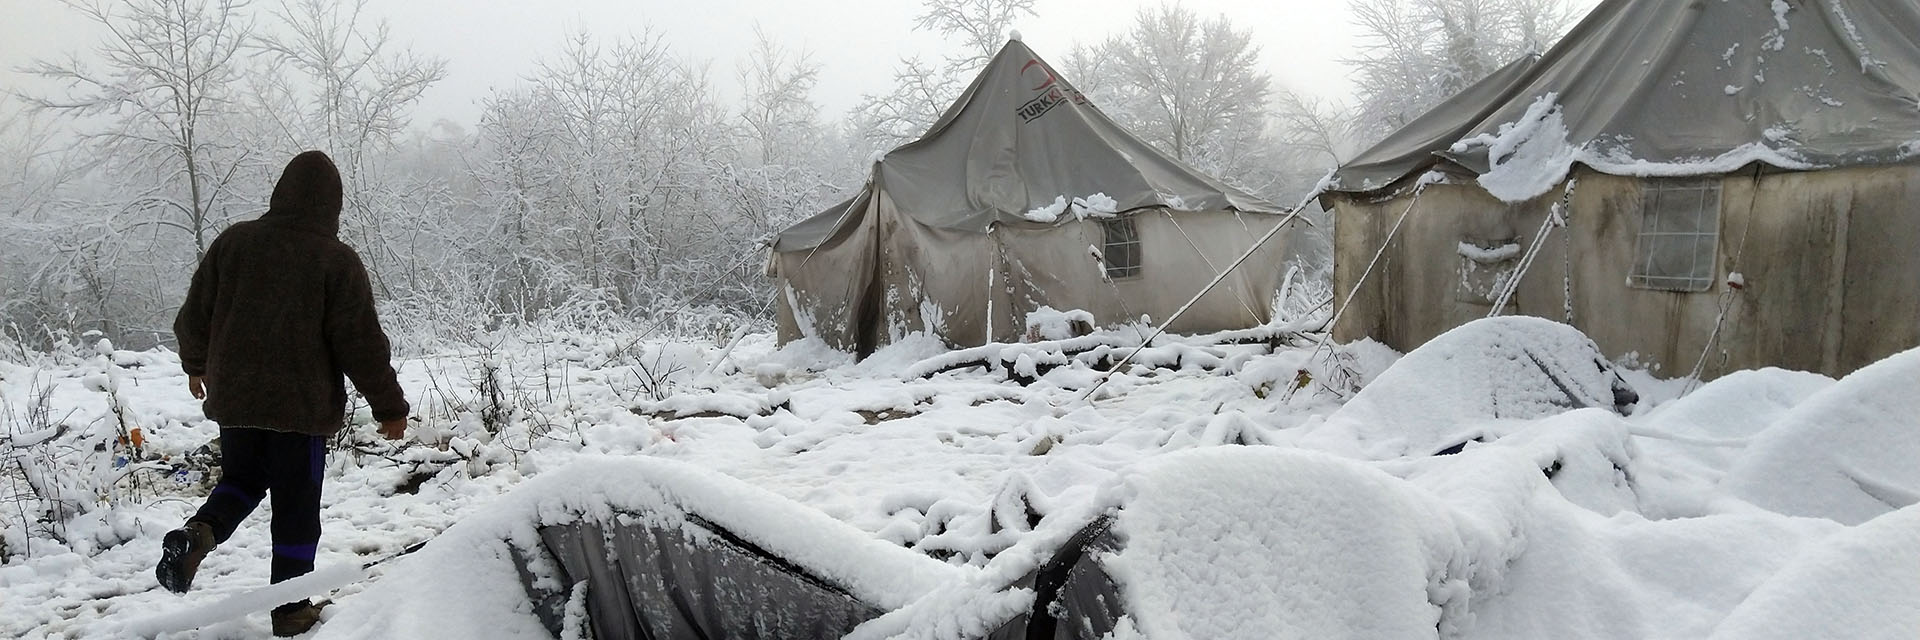 Zelte der Flüchtlinge in Bosnien im Winter